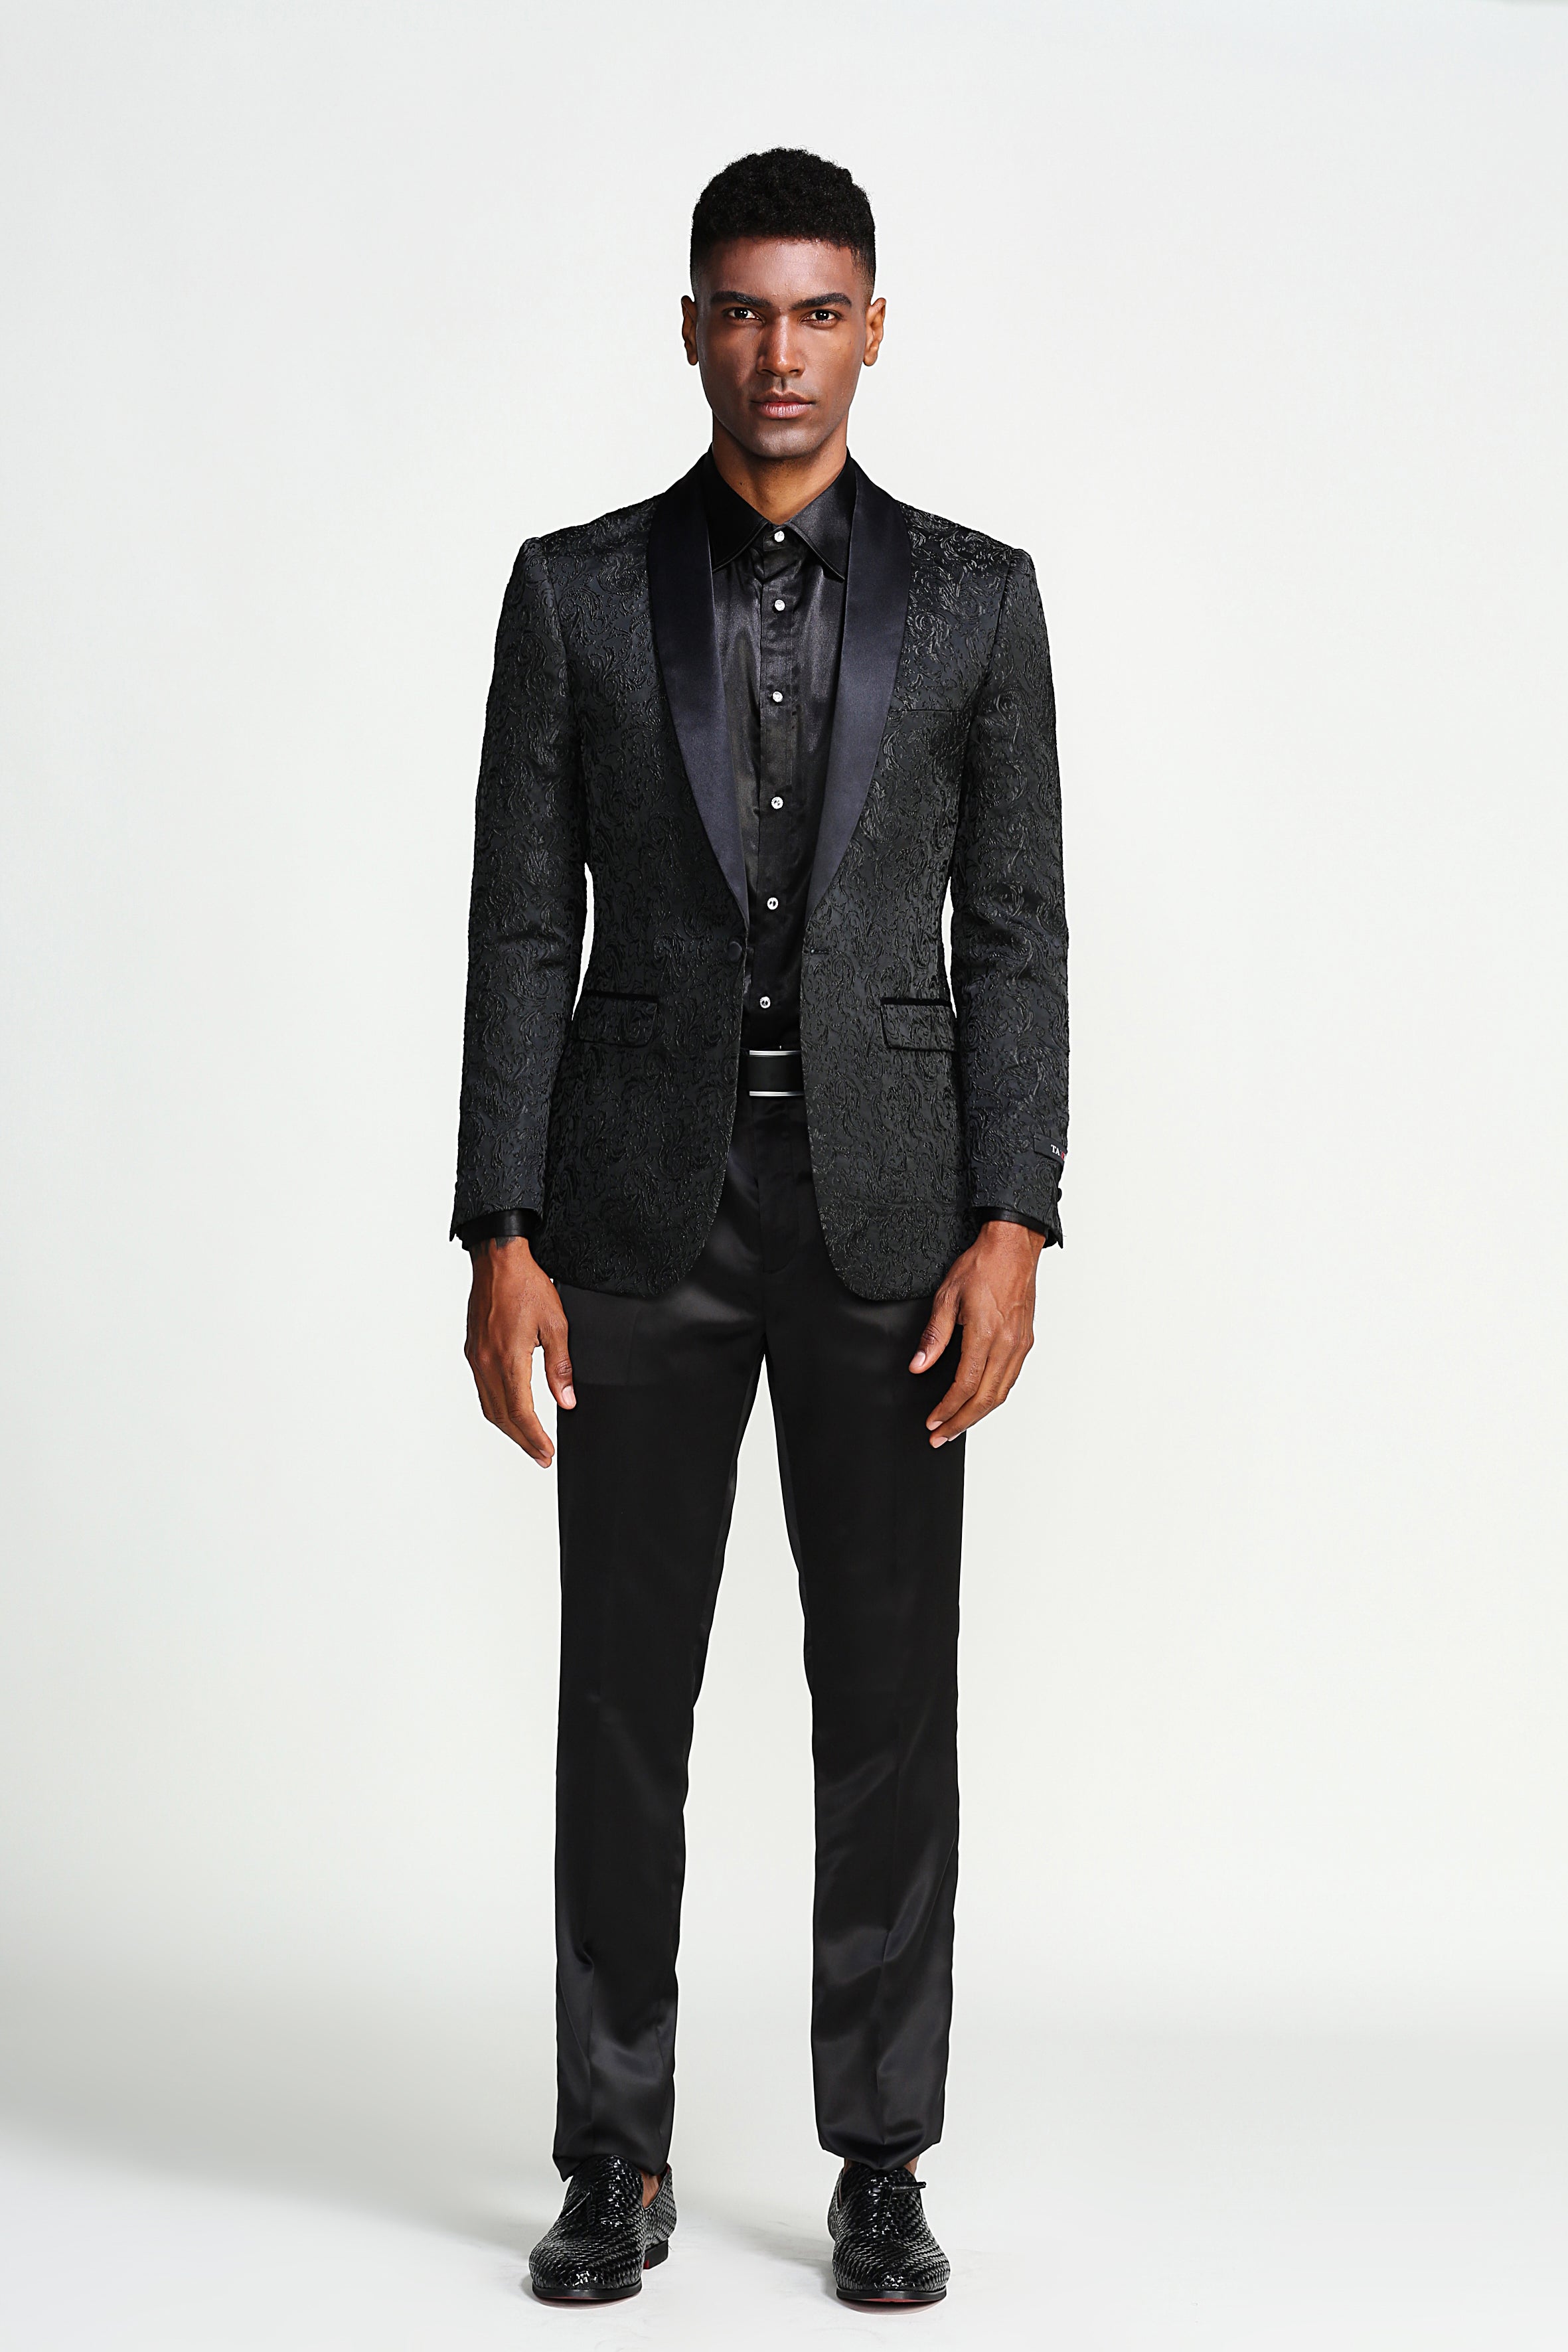  Men's Sport Coats & Blazers - Black / Men's Sport